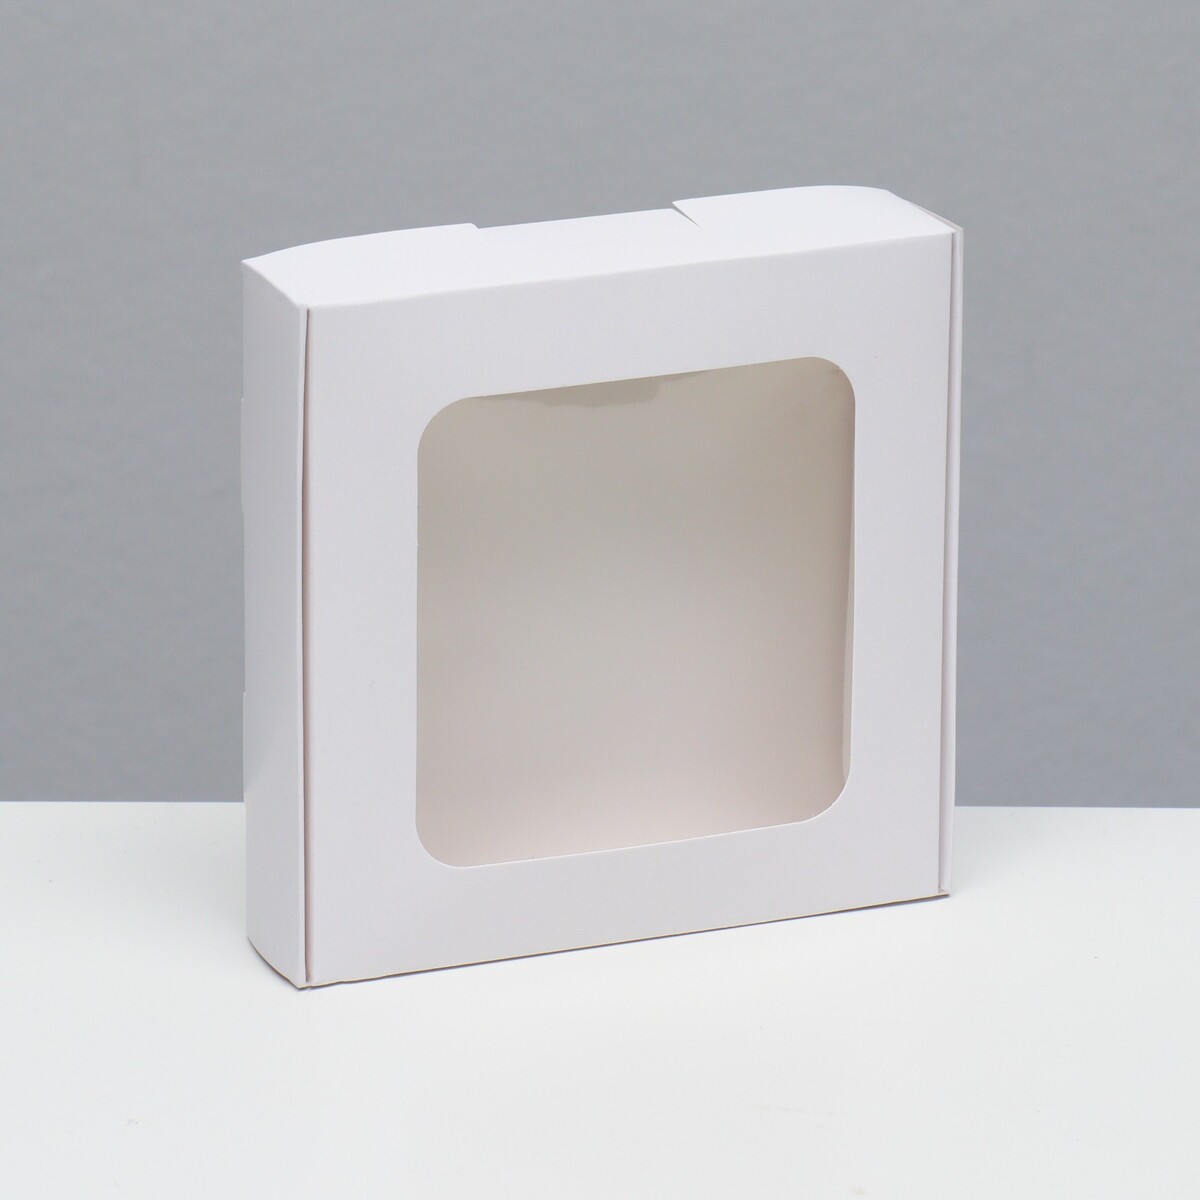 Коробка самосборная, белая, 13 х 13 х 3 см коробка самосборная дед мороз 11 х 8 х 2 см